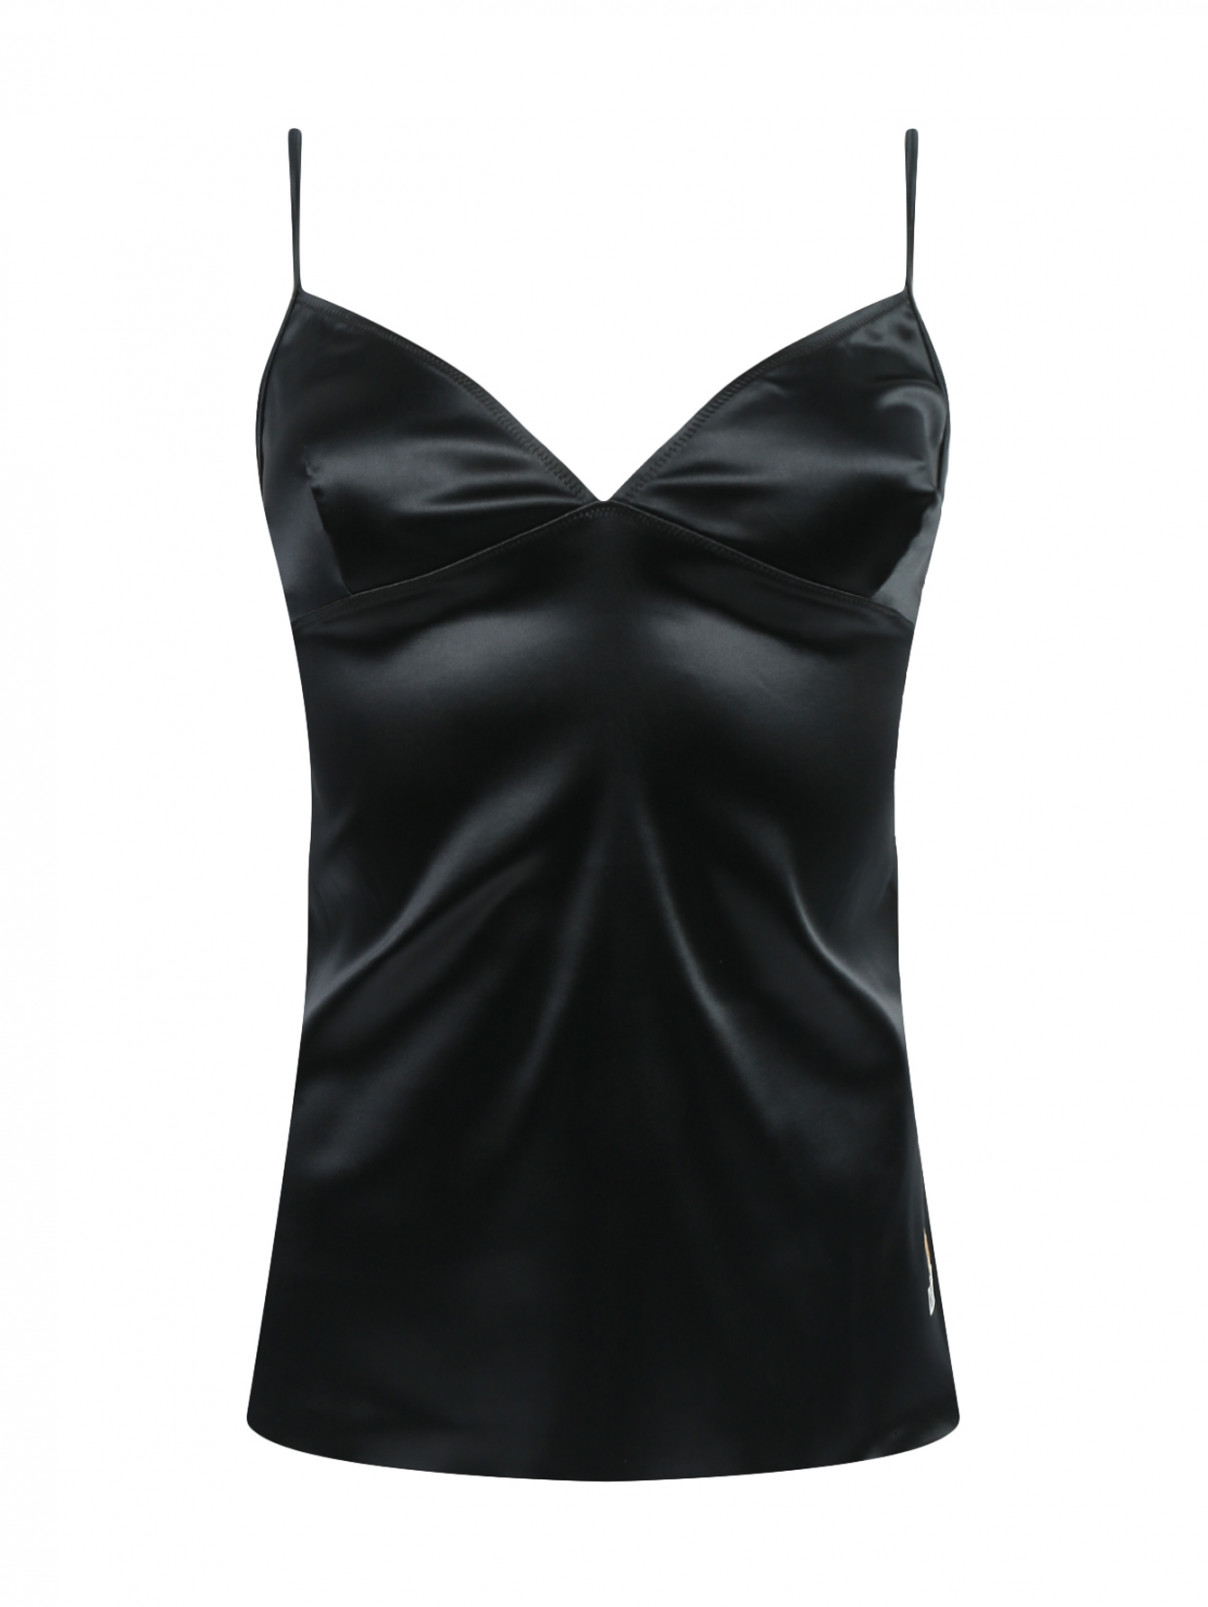 Комбинация на бретелях Moschino Underwear  –  Общий вид  – Цвет:  Черный